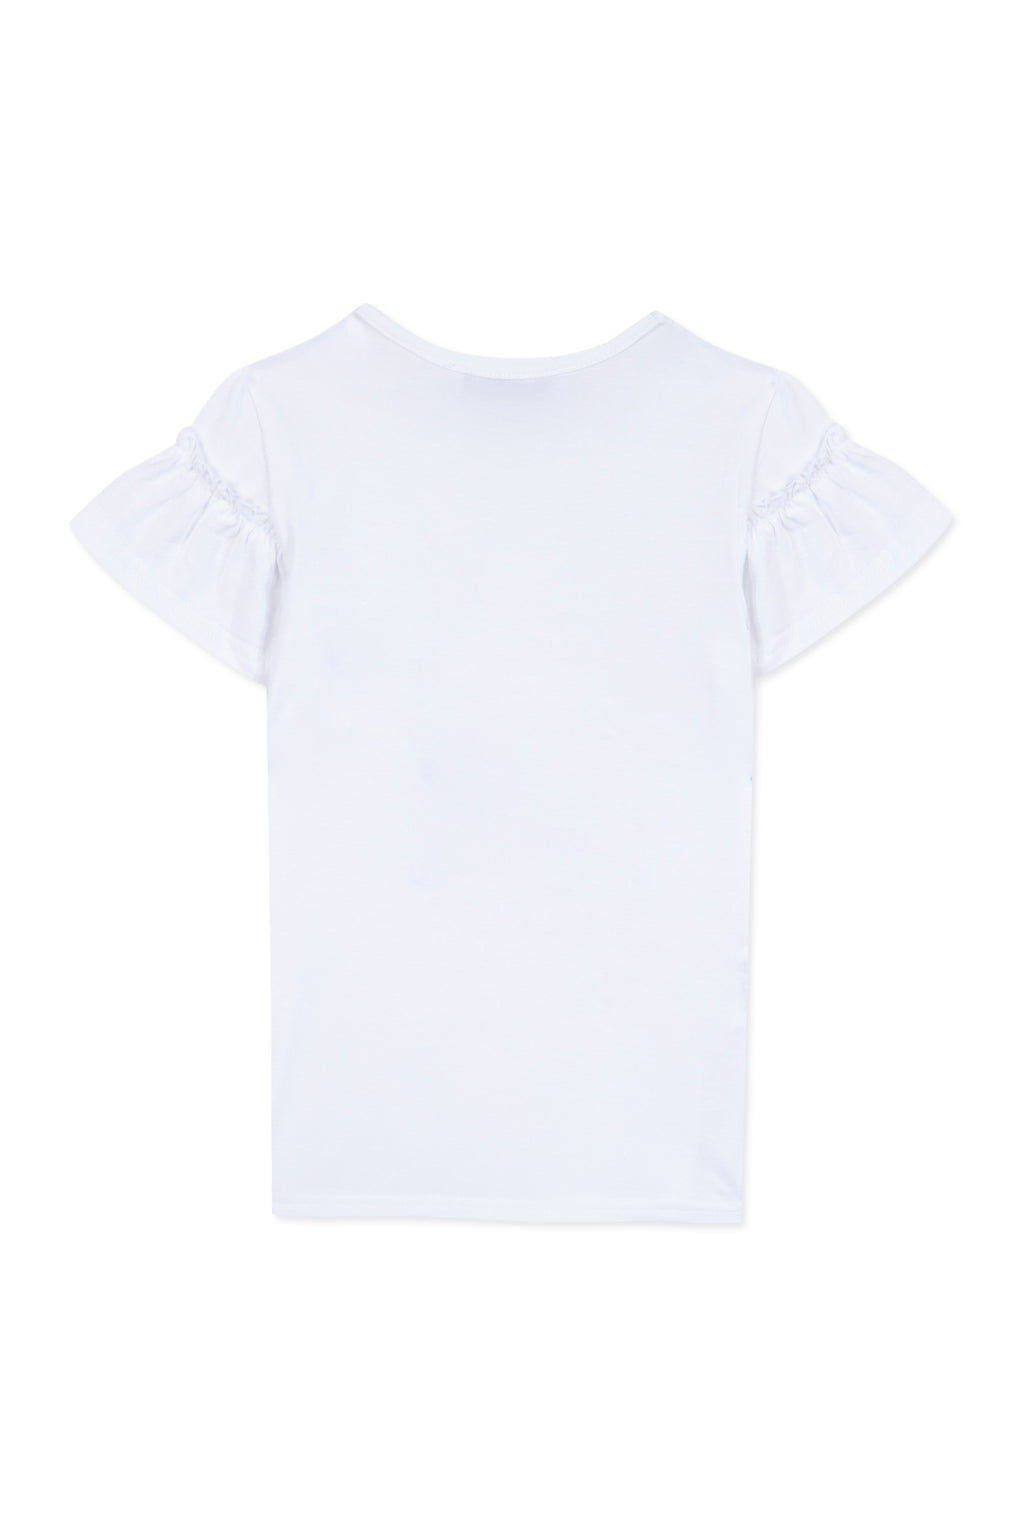 T-shirt - White Illustration summer basket